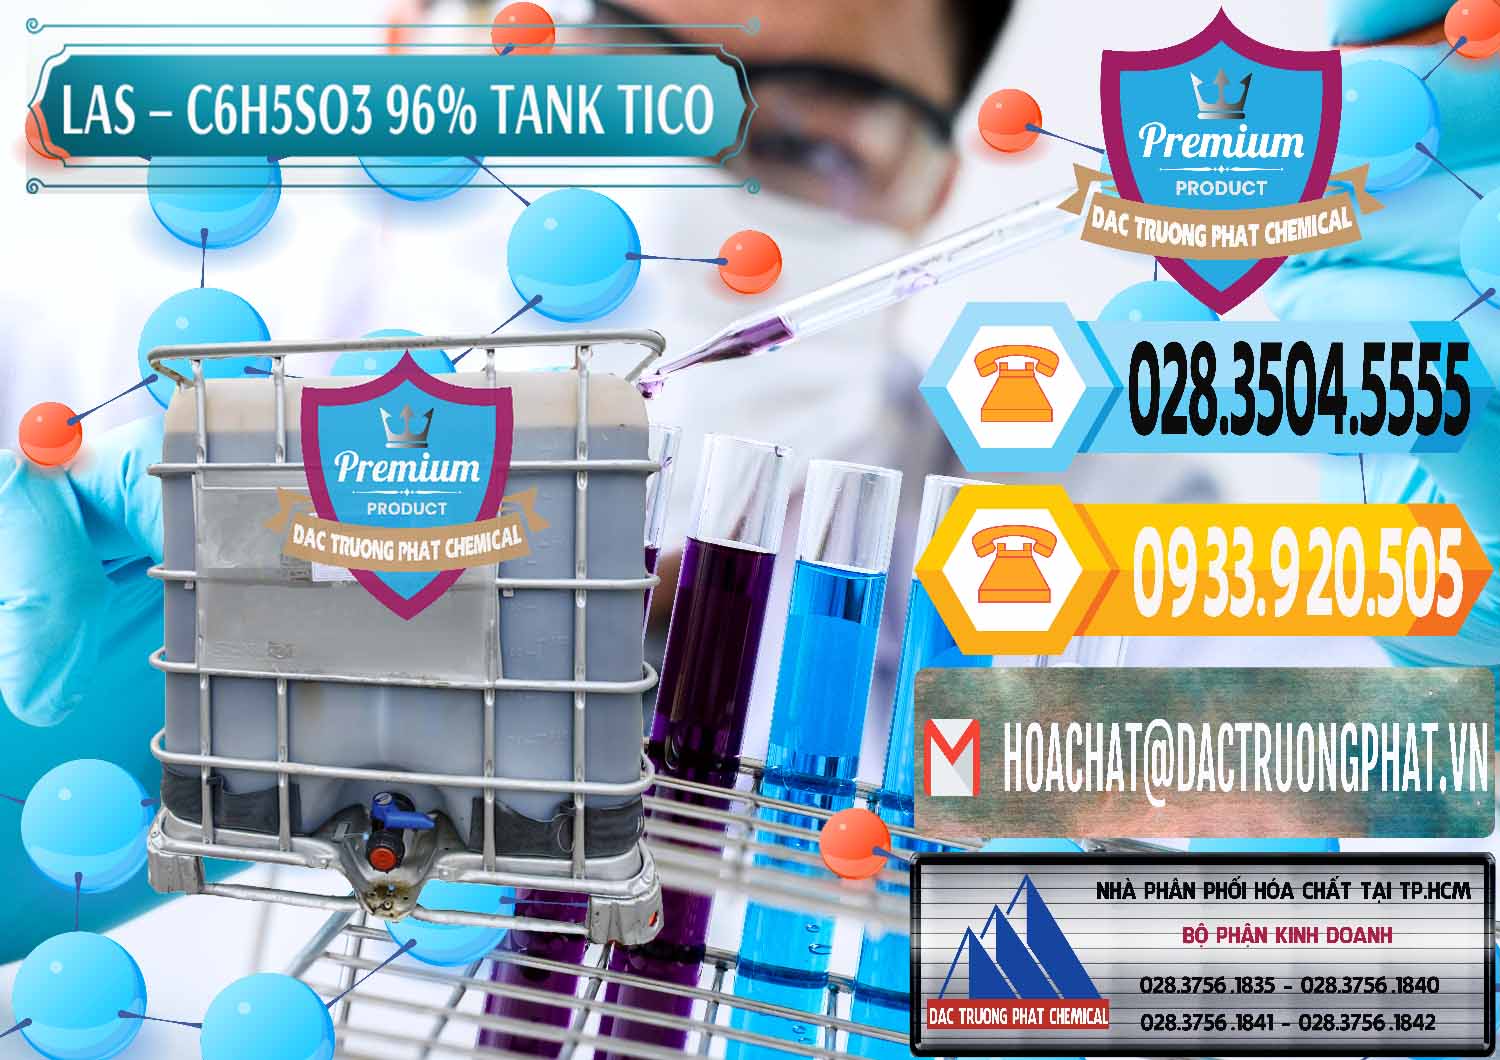 Kinh doanh _ bán Chất tạo bọt Las P Tico Tank IBC Bồn Việt Nam - 0488 - Đơn vị cung cấp _ phân phối hóa chất tại TP.HCM - hoachattayrua.net